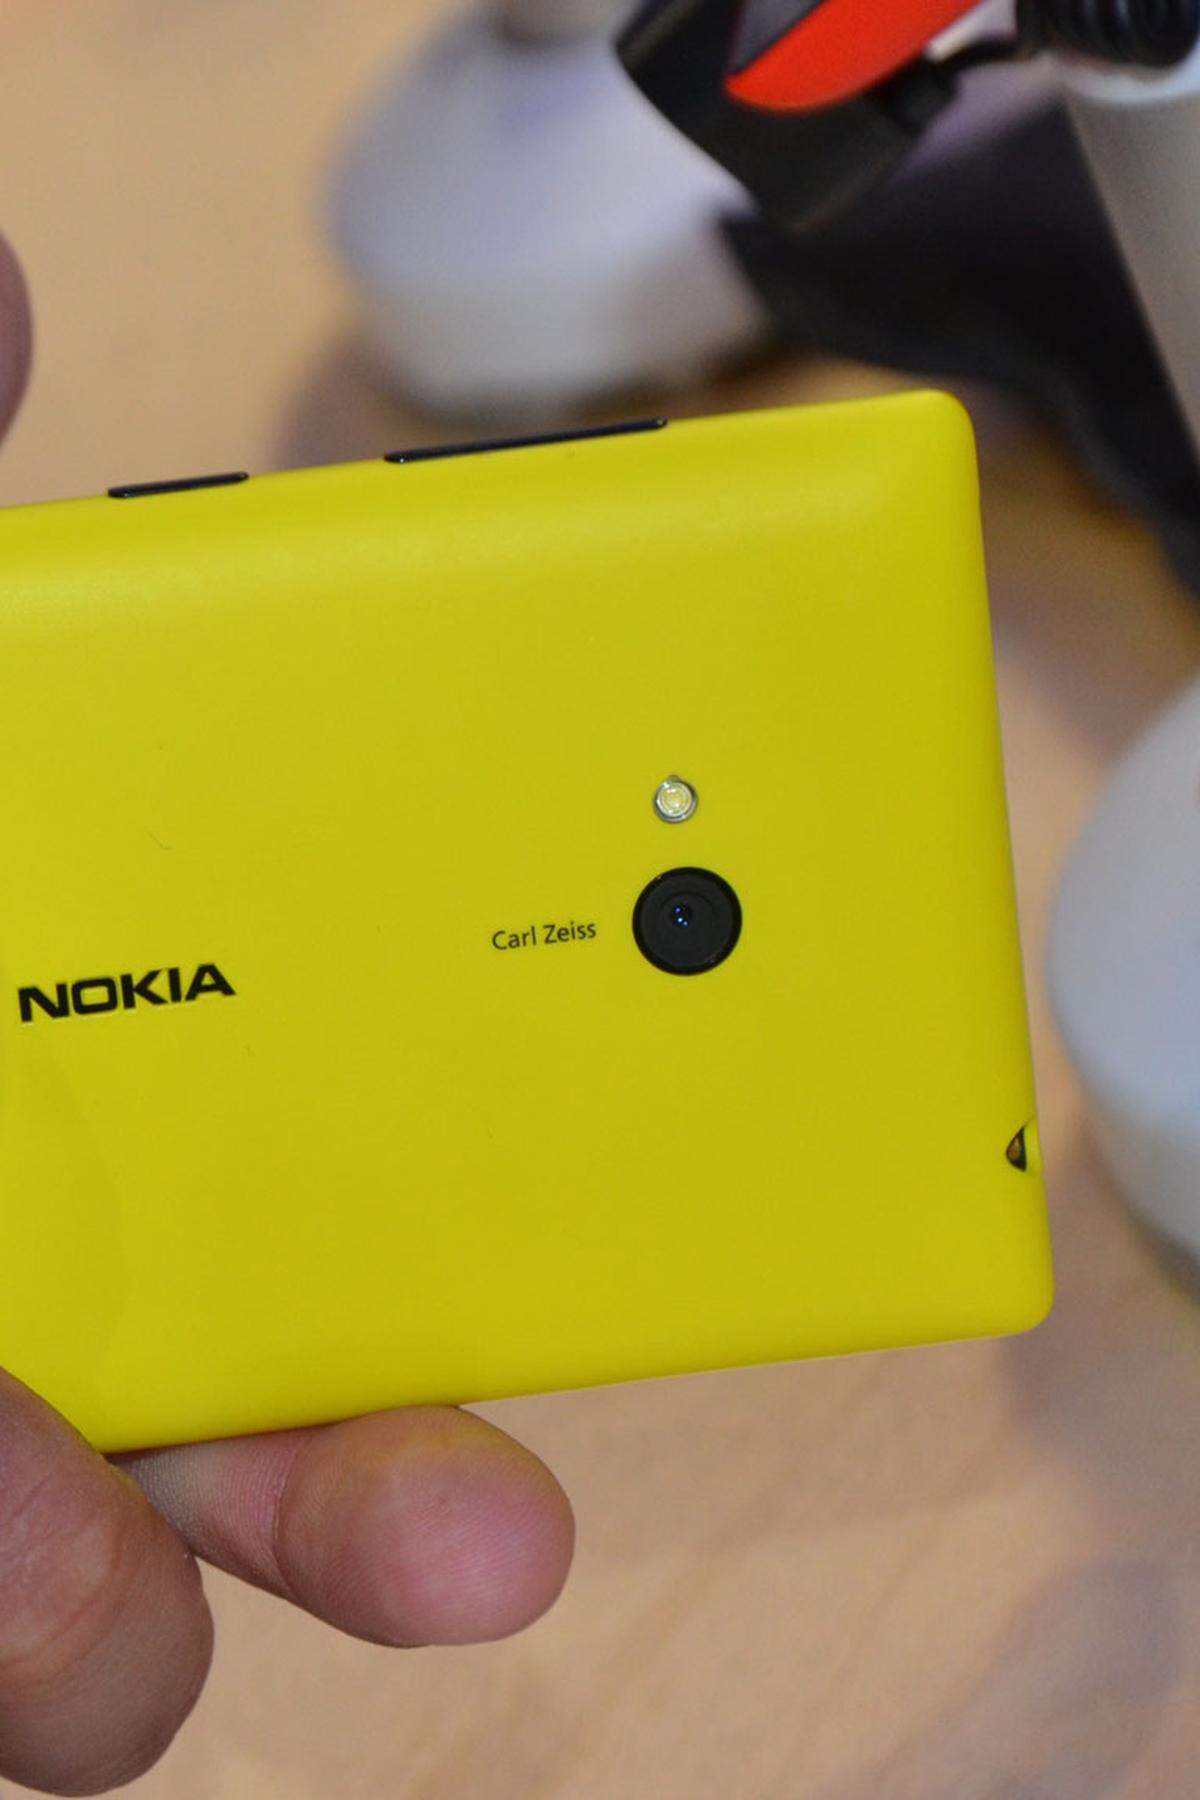 Die Hauptkamera des 720 hat 6,7 Megapixel und macht laut Nokia speziell in dunklen Umgebungen gute Fotos. Die Lichtverhältnisse am Messestand sind tatsächlich eine gute erste Testumgebung für diese Behauptung - überdurchschnittlich waren erste Testbilder jedoch nicht. Nokia hat in diesem Fall nicht von seiner "PureView"-Technologie gesprochen.